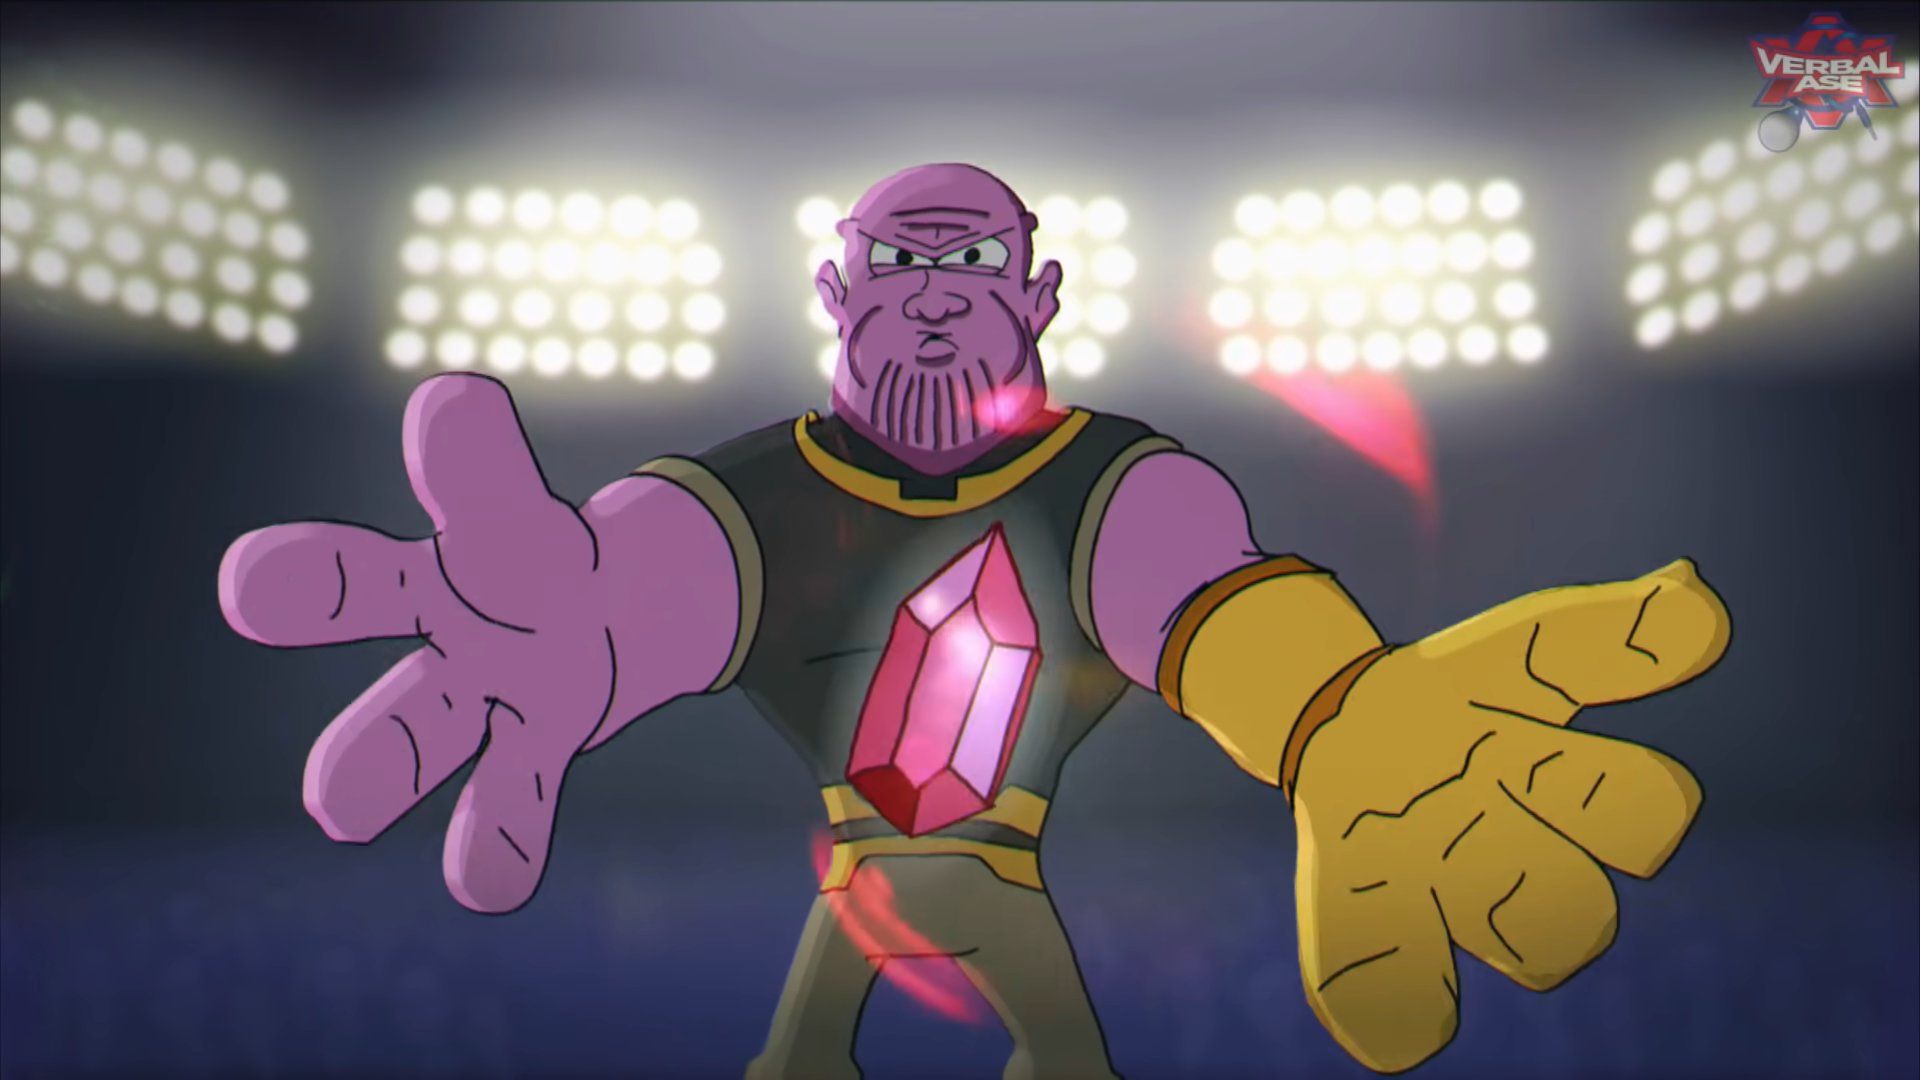 Thanos Beatbox / Cartoon Beatbox Battles